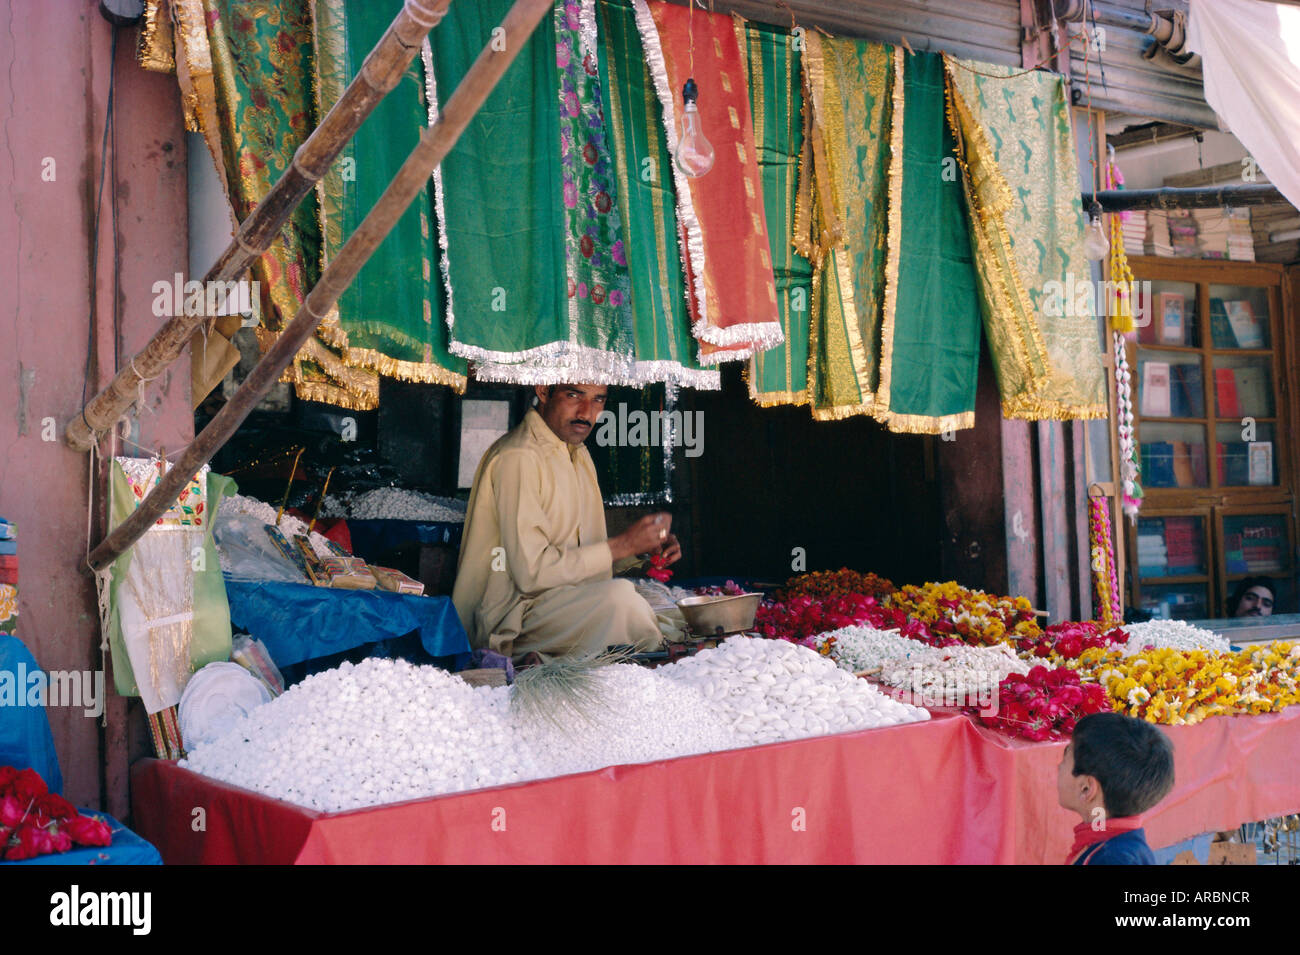 Standbesitzer, Daten Durbar Schrein, Lahore, Pakistan Stockfoto